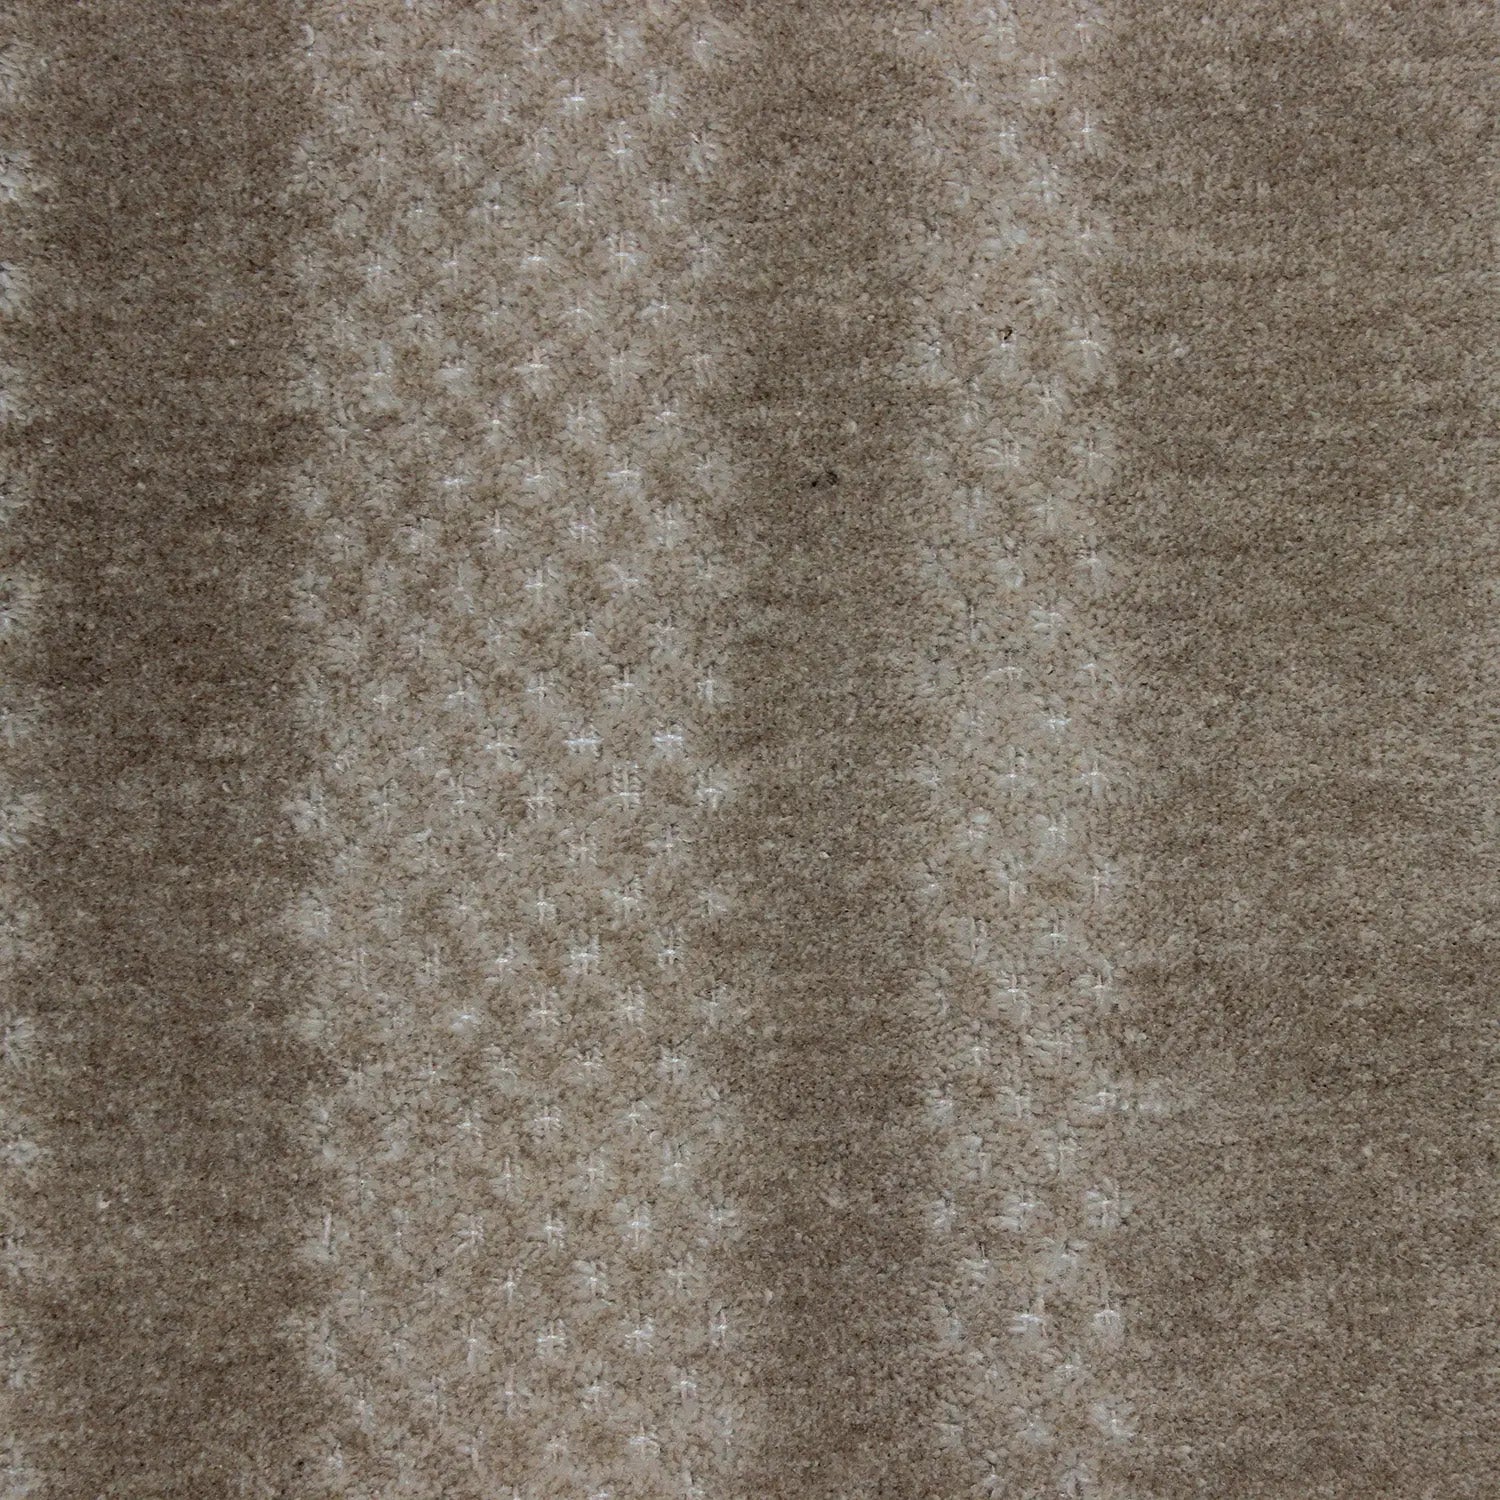 Lacey Plain Beige Wool Rug DecoRug